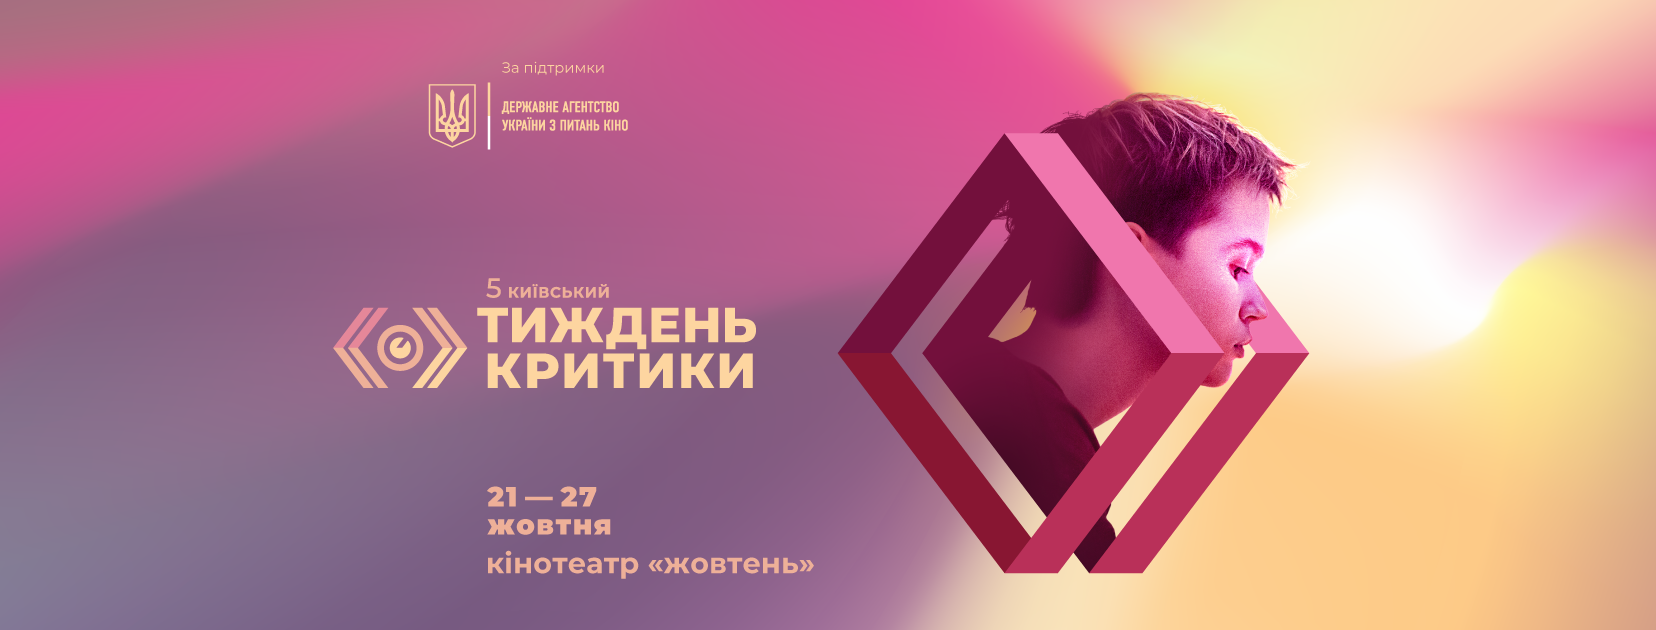 В столице проведут пятый кинофестиваль “Киевская неделя критики”